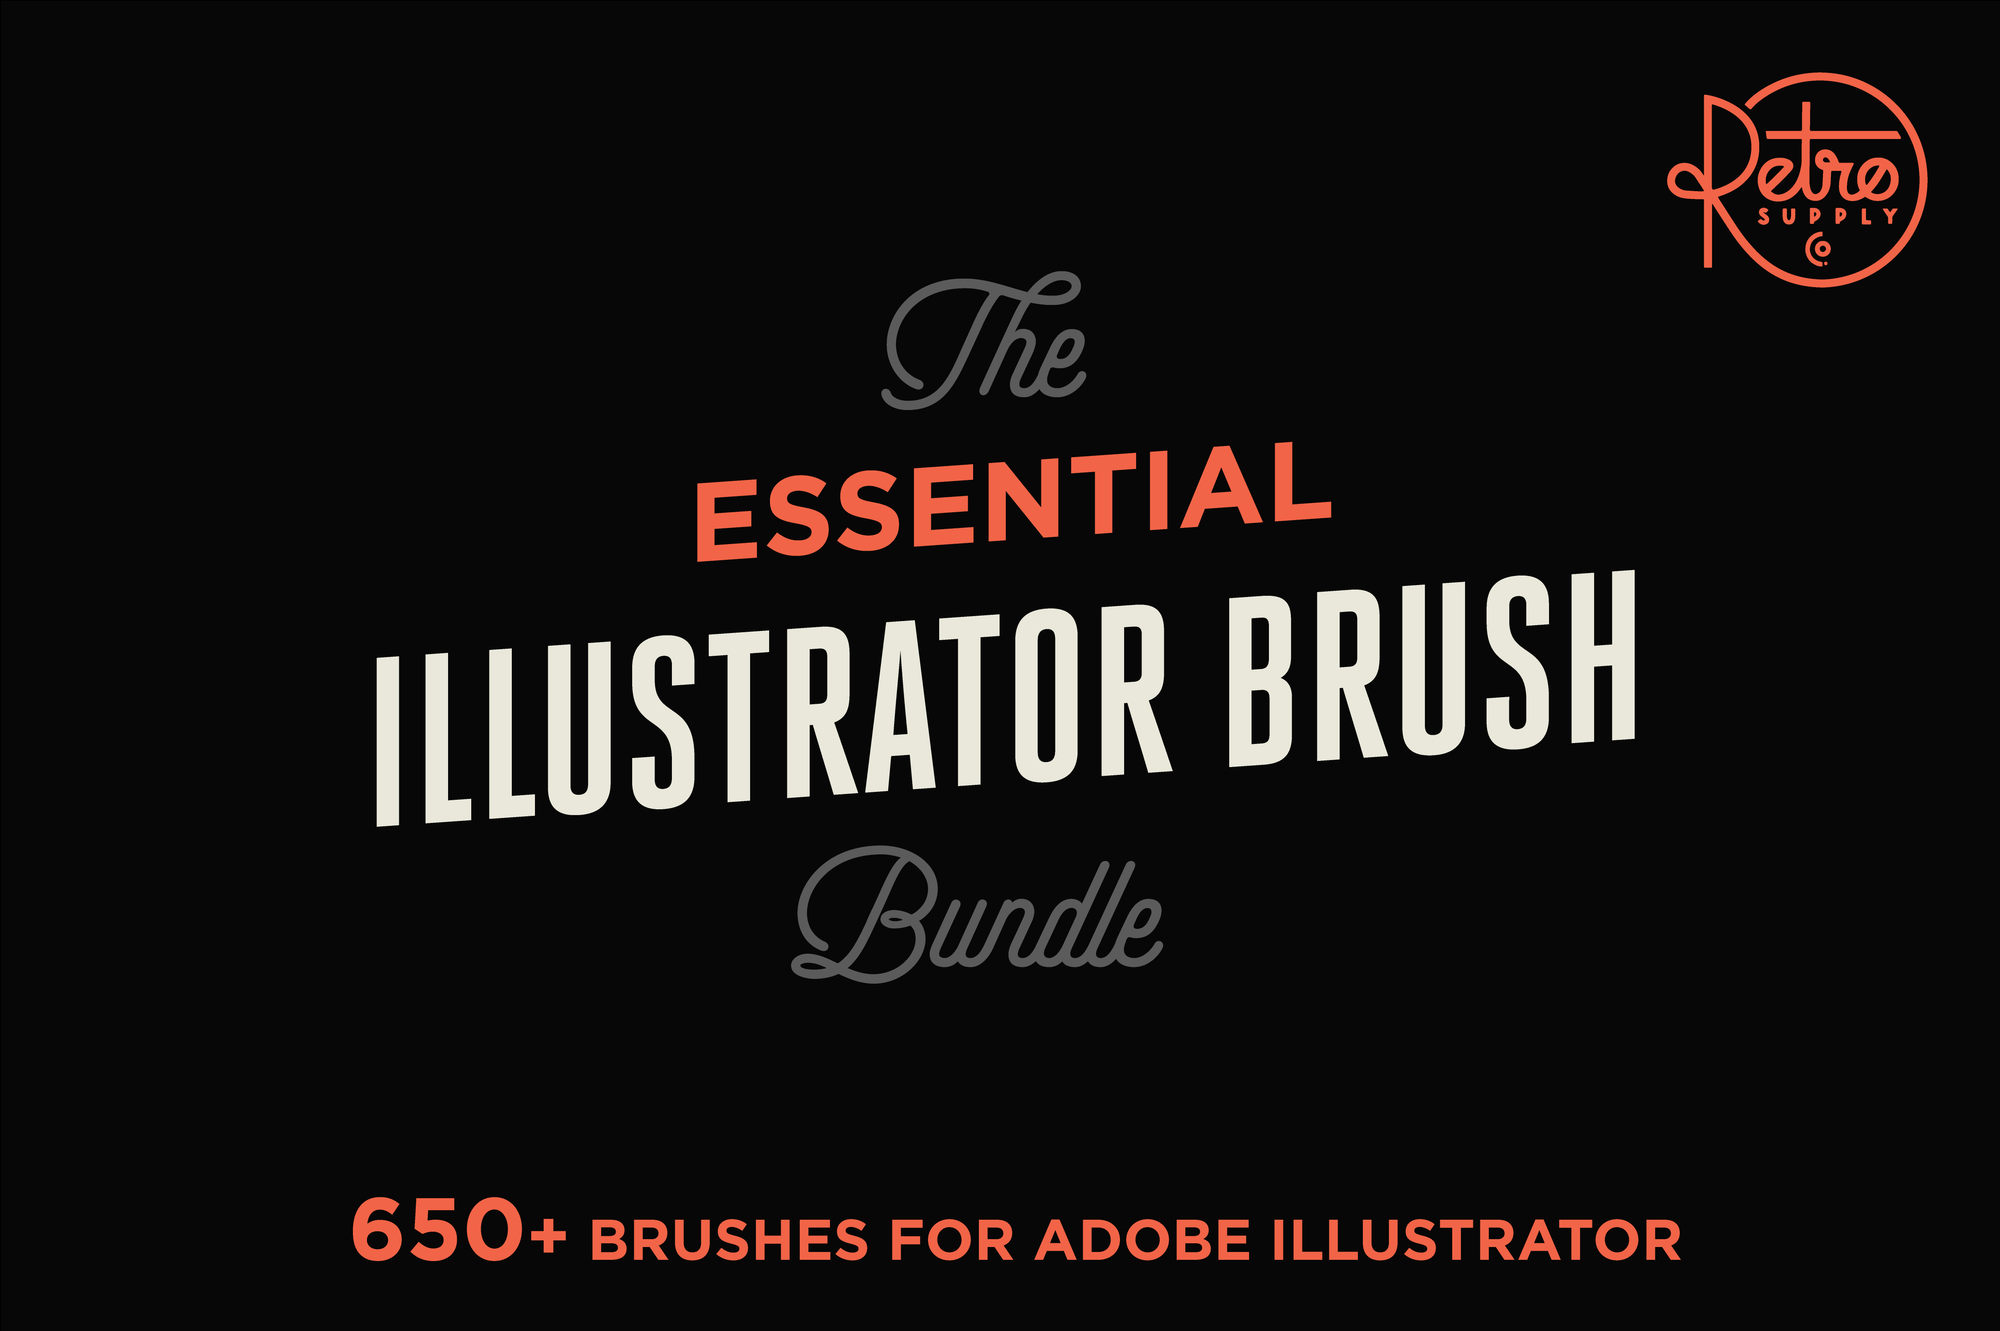 The Essential Illustrator Brush Bundle